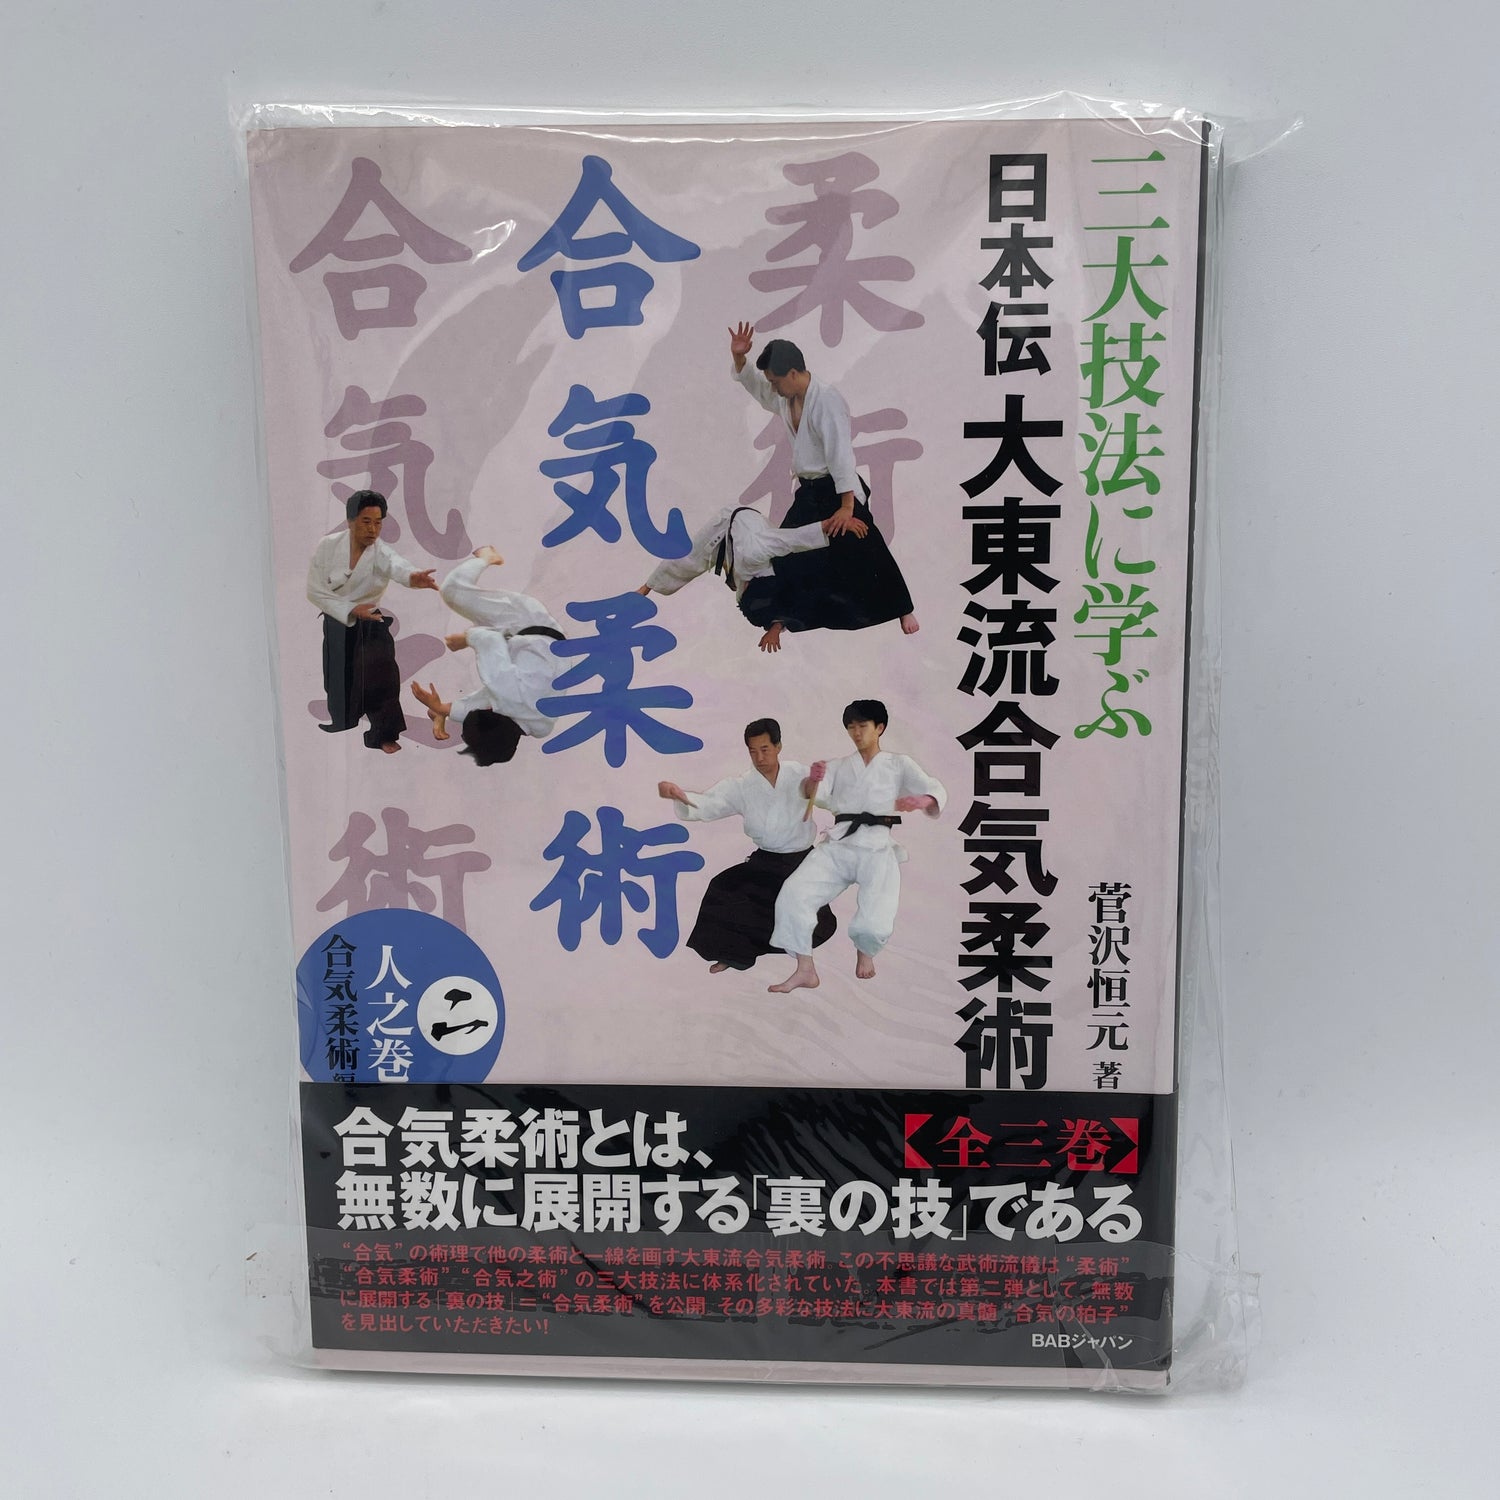 日本伝大東流合気柔術 Book 2: 合気柔術 菅沢高玄著 (中古品) 